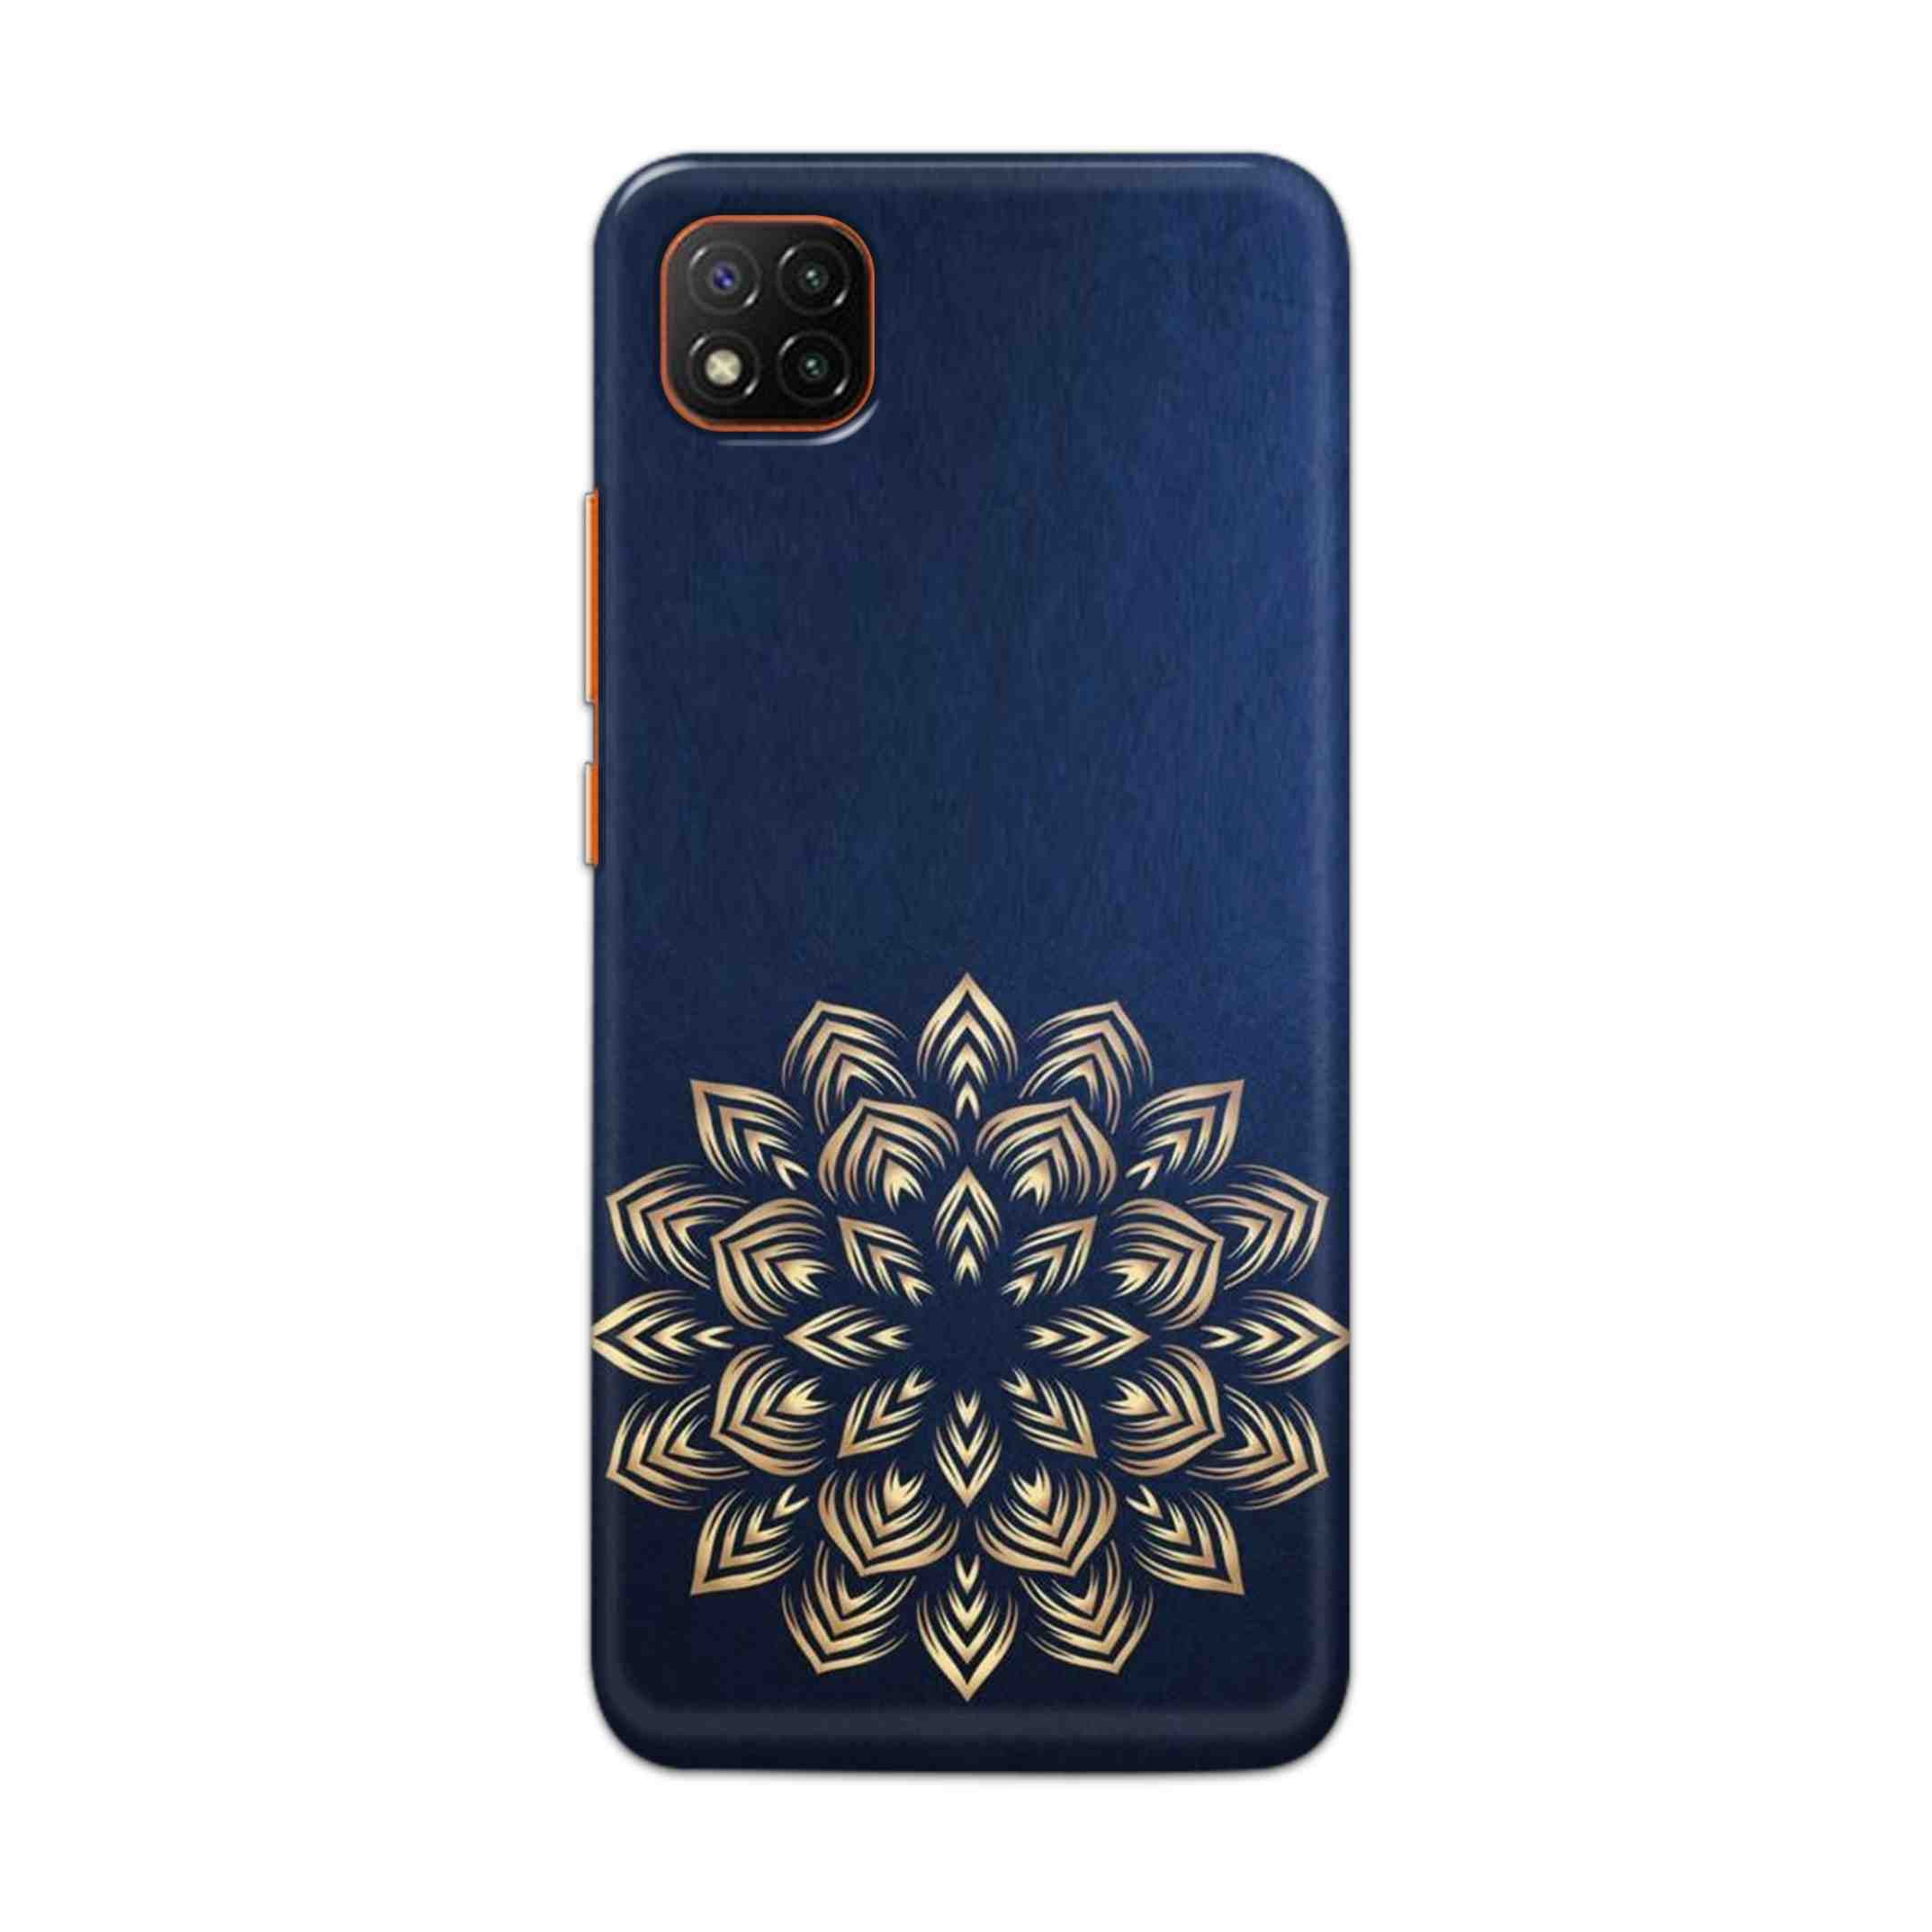 Buy Heart Mandala Hard Back Mobile Phone Case Cover For Mi 9C Online